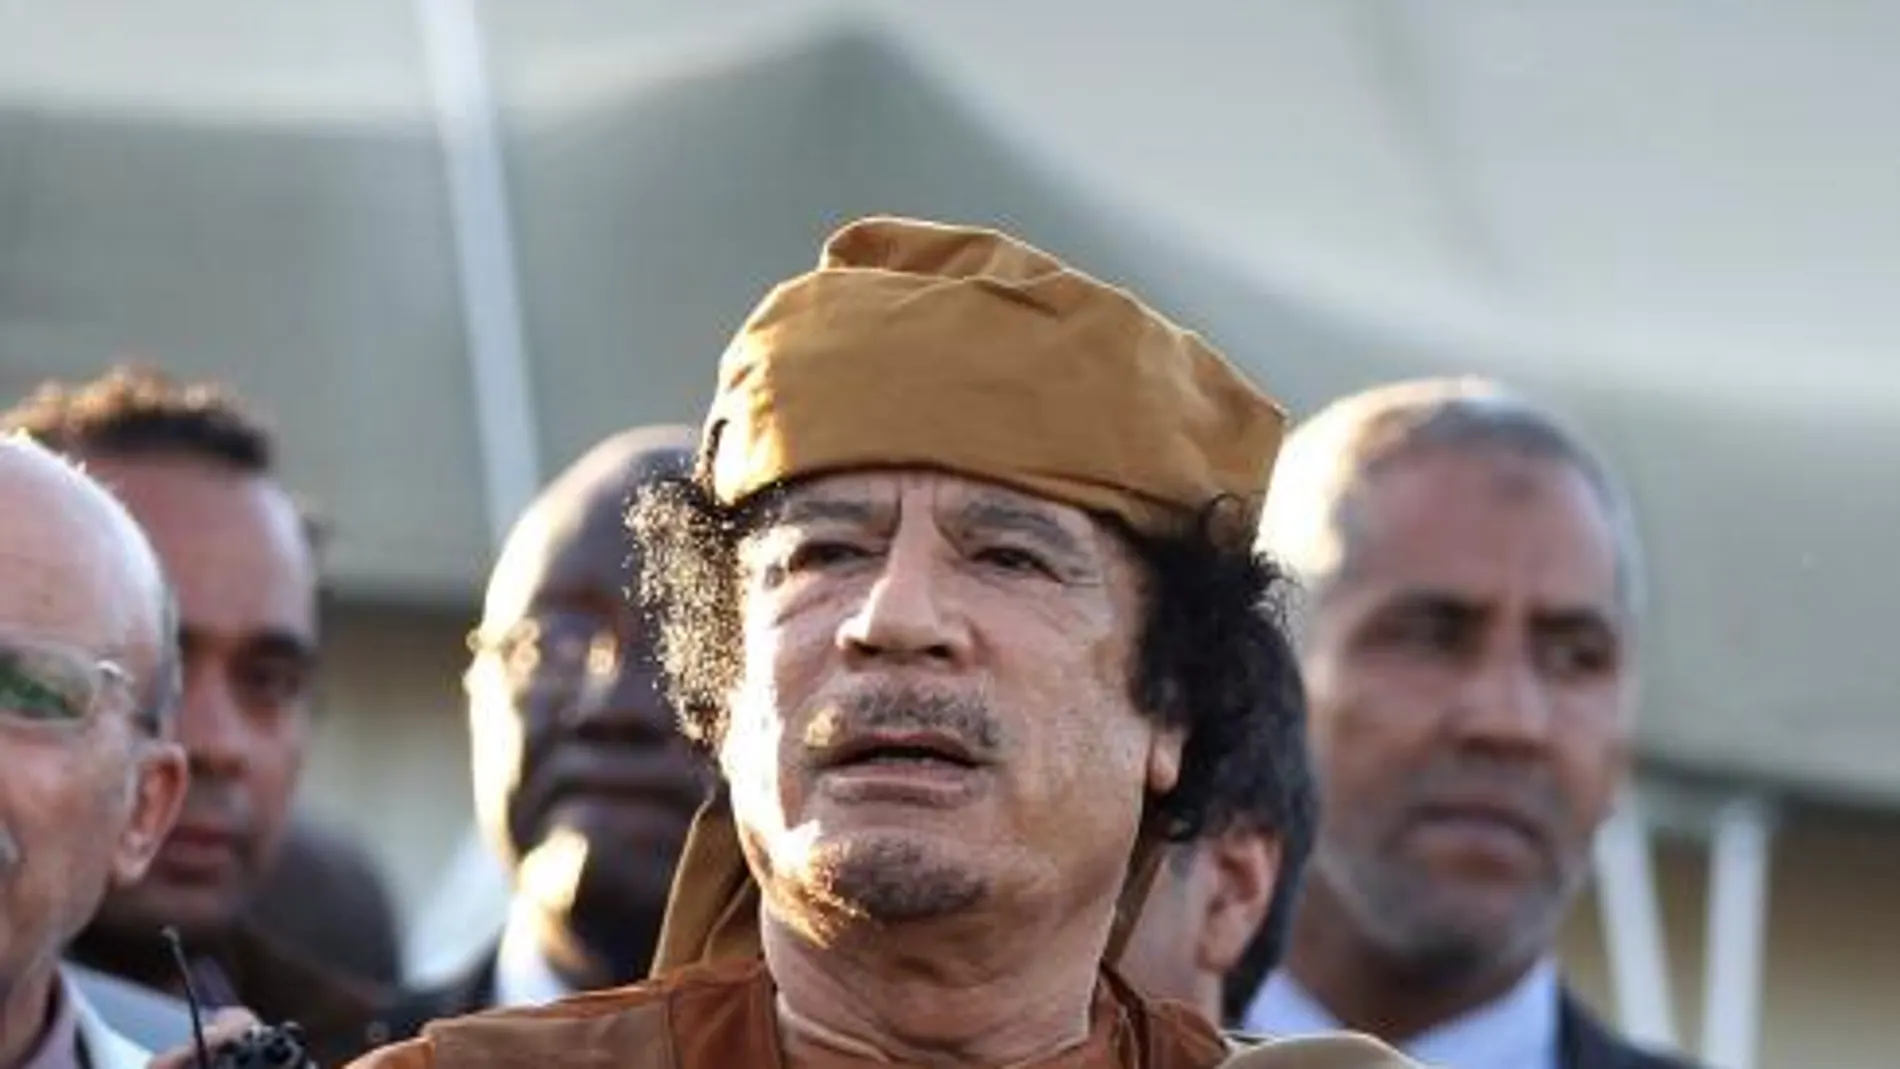 Imagen de archivo tomada el 10 de abril de 2011 que muestra al líder libio Muamar el Gadafi visitando el campamento militar de Bab Al Azizia, en Trípoli, Libia.